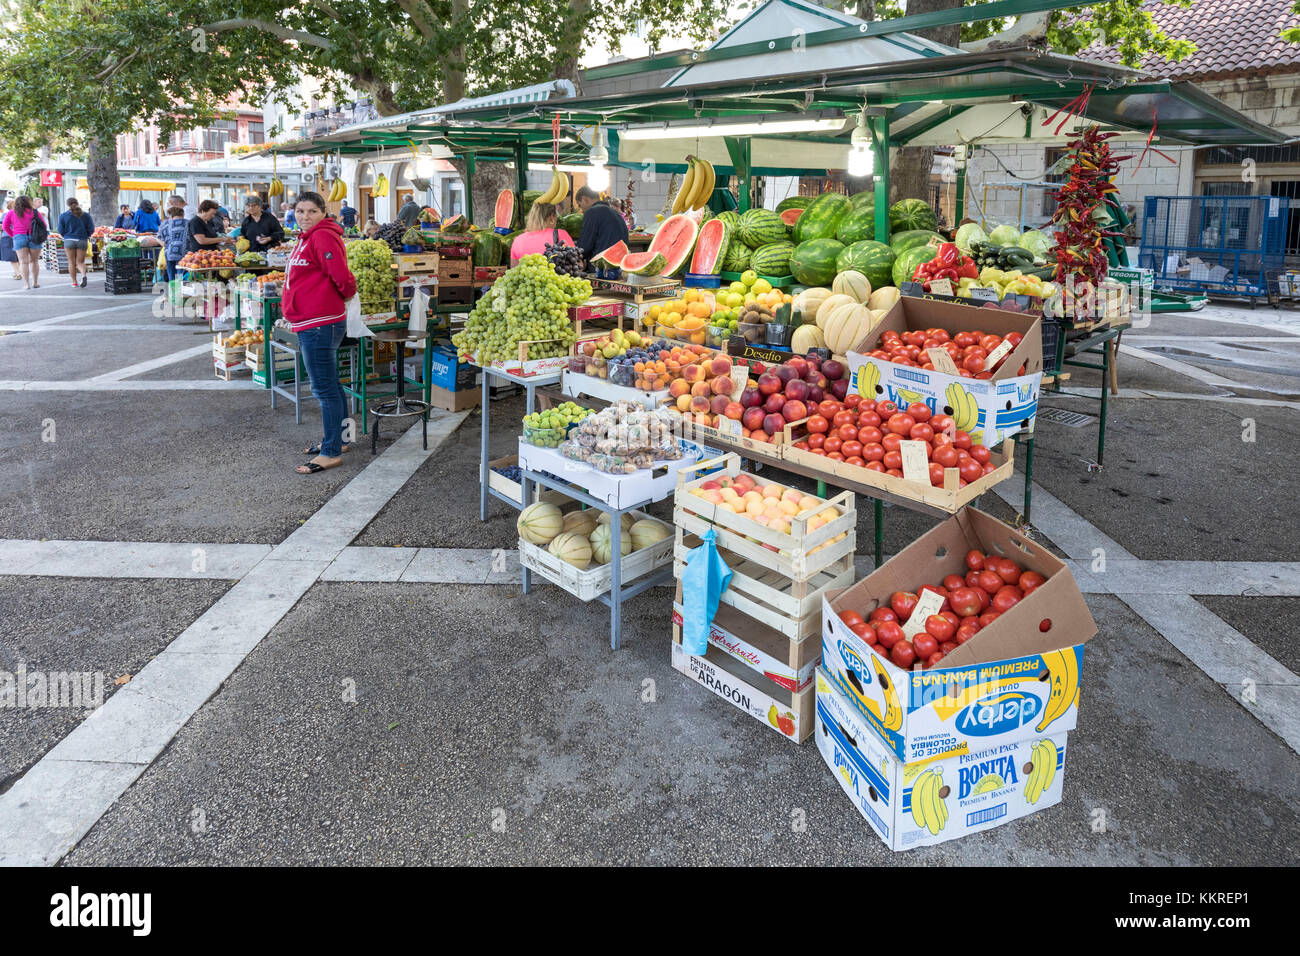 Les fruits et légumes sur une échoppe de marché dans les rues de Dubrovnik, Dalmatie, côte adriatique, Croatie Banque D'Images